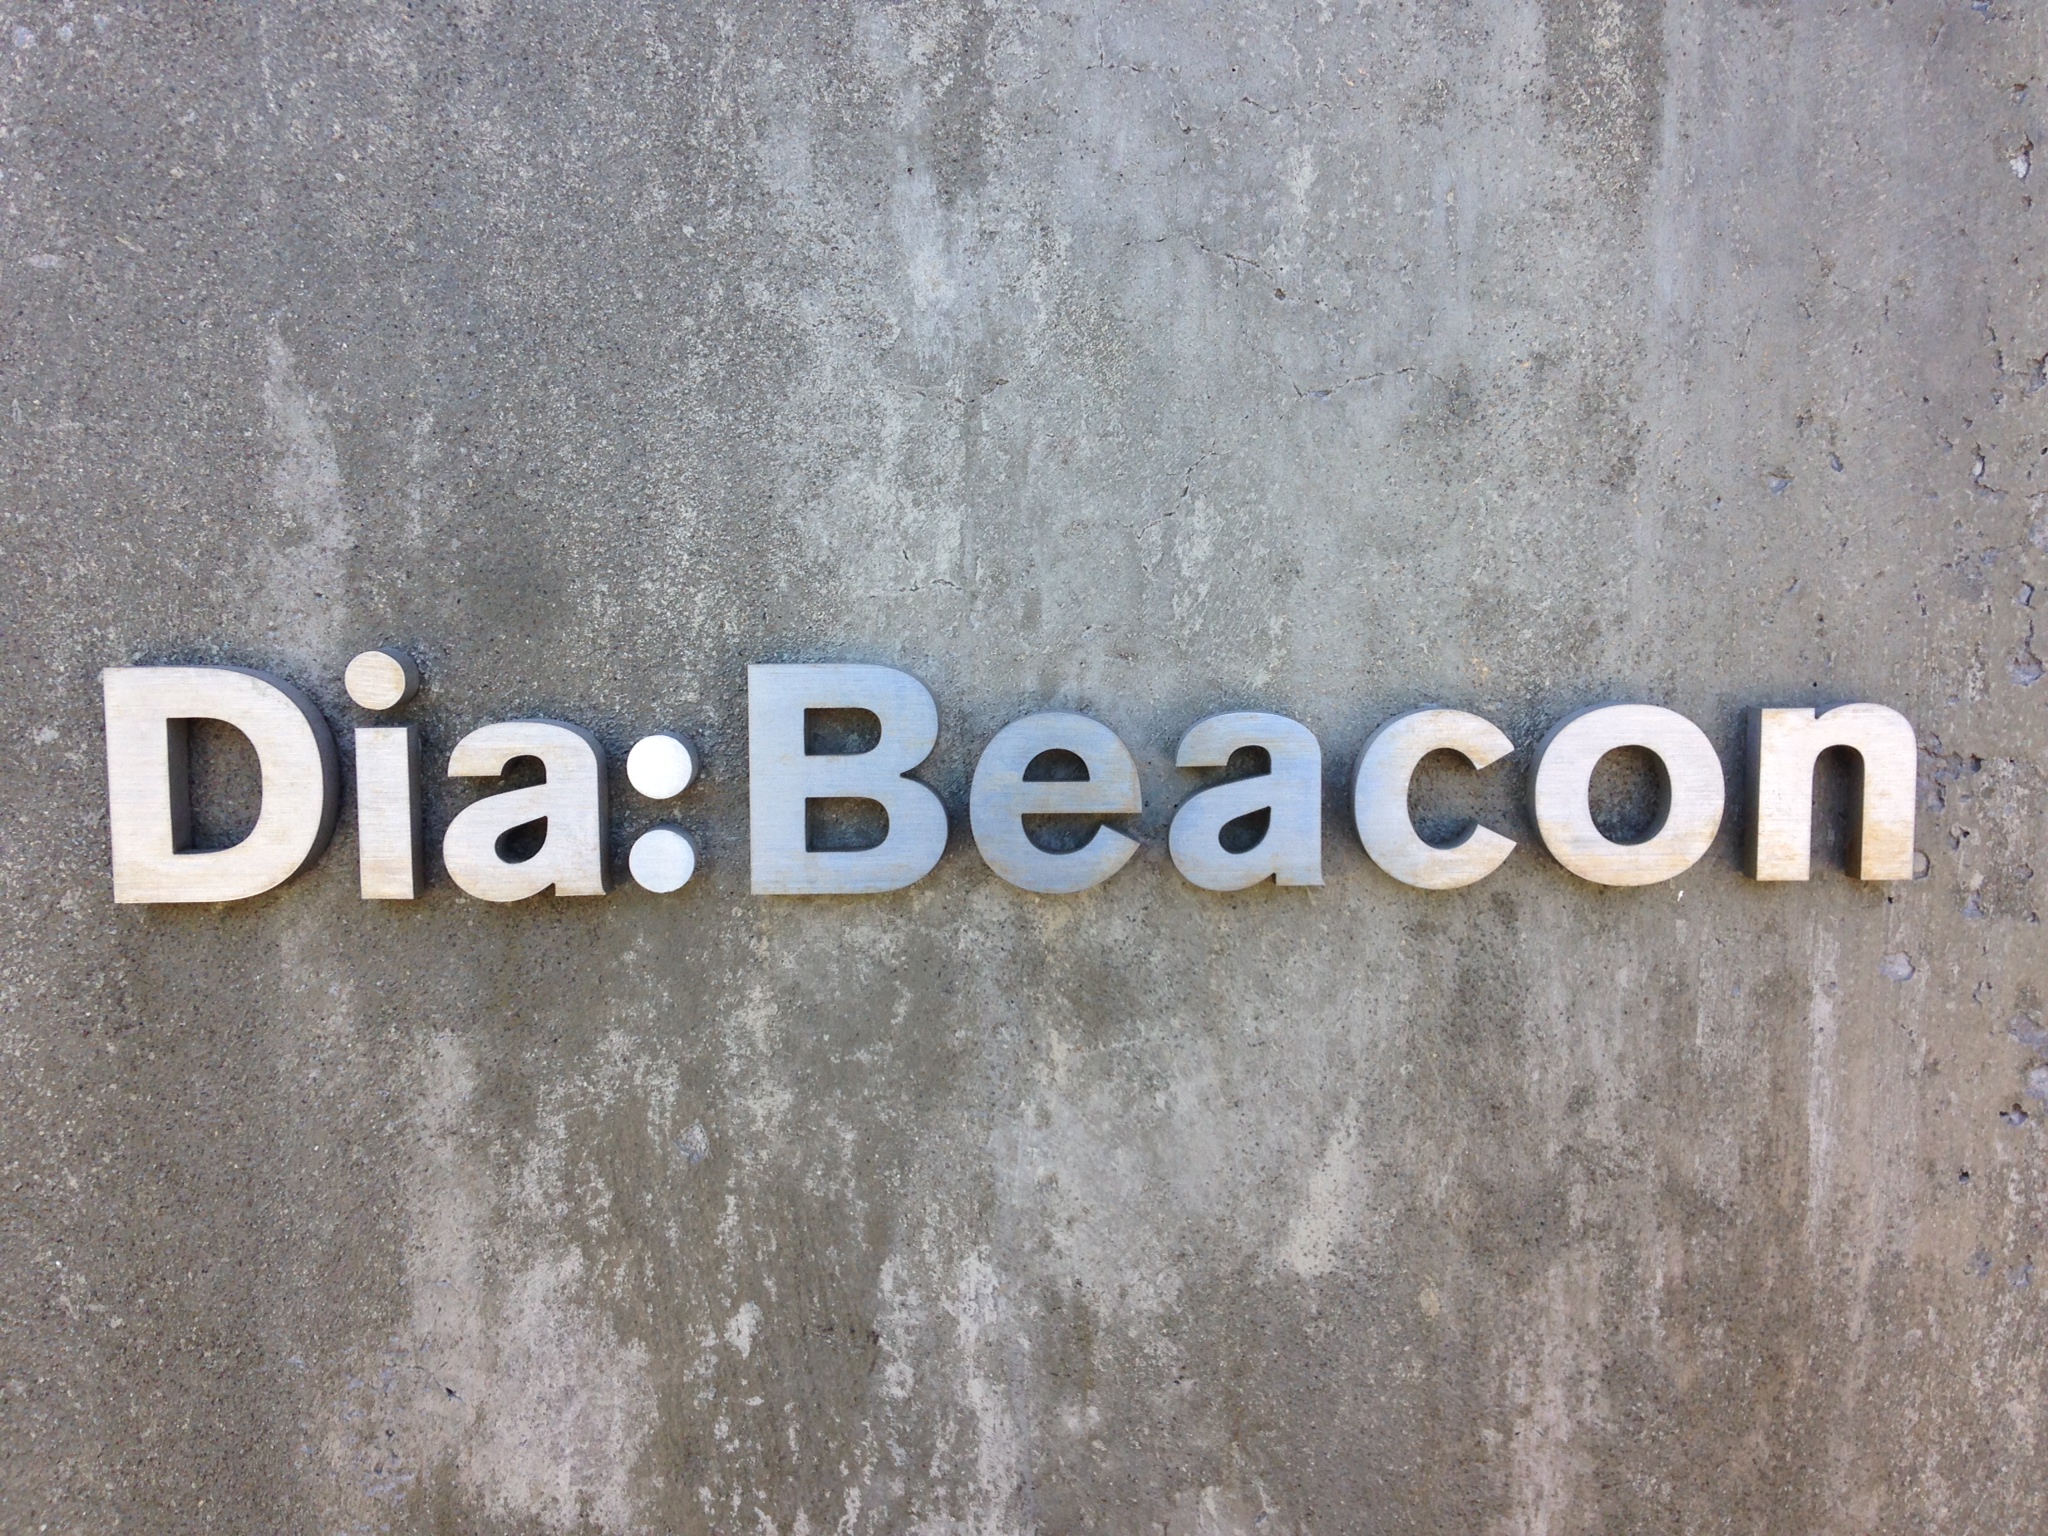 Dia-Beacon-sign.jpg